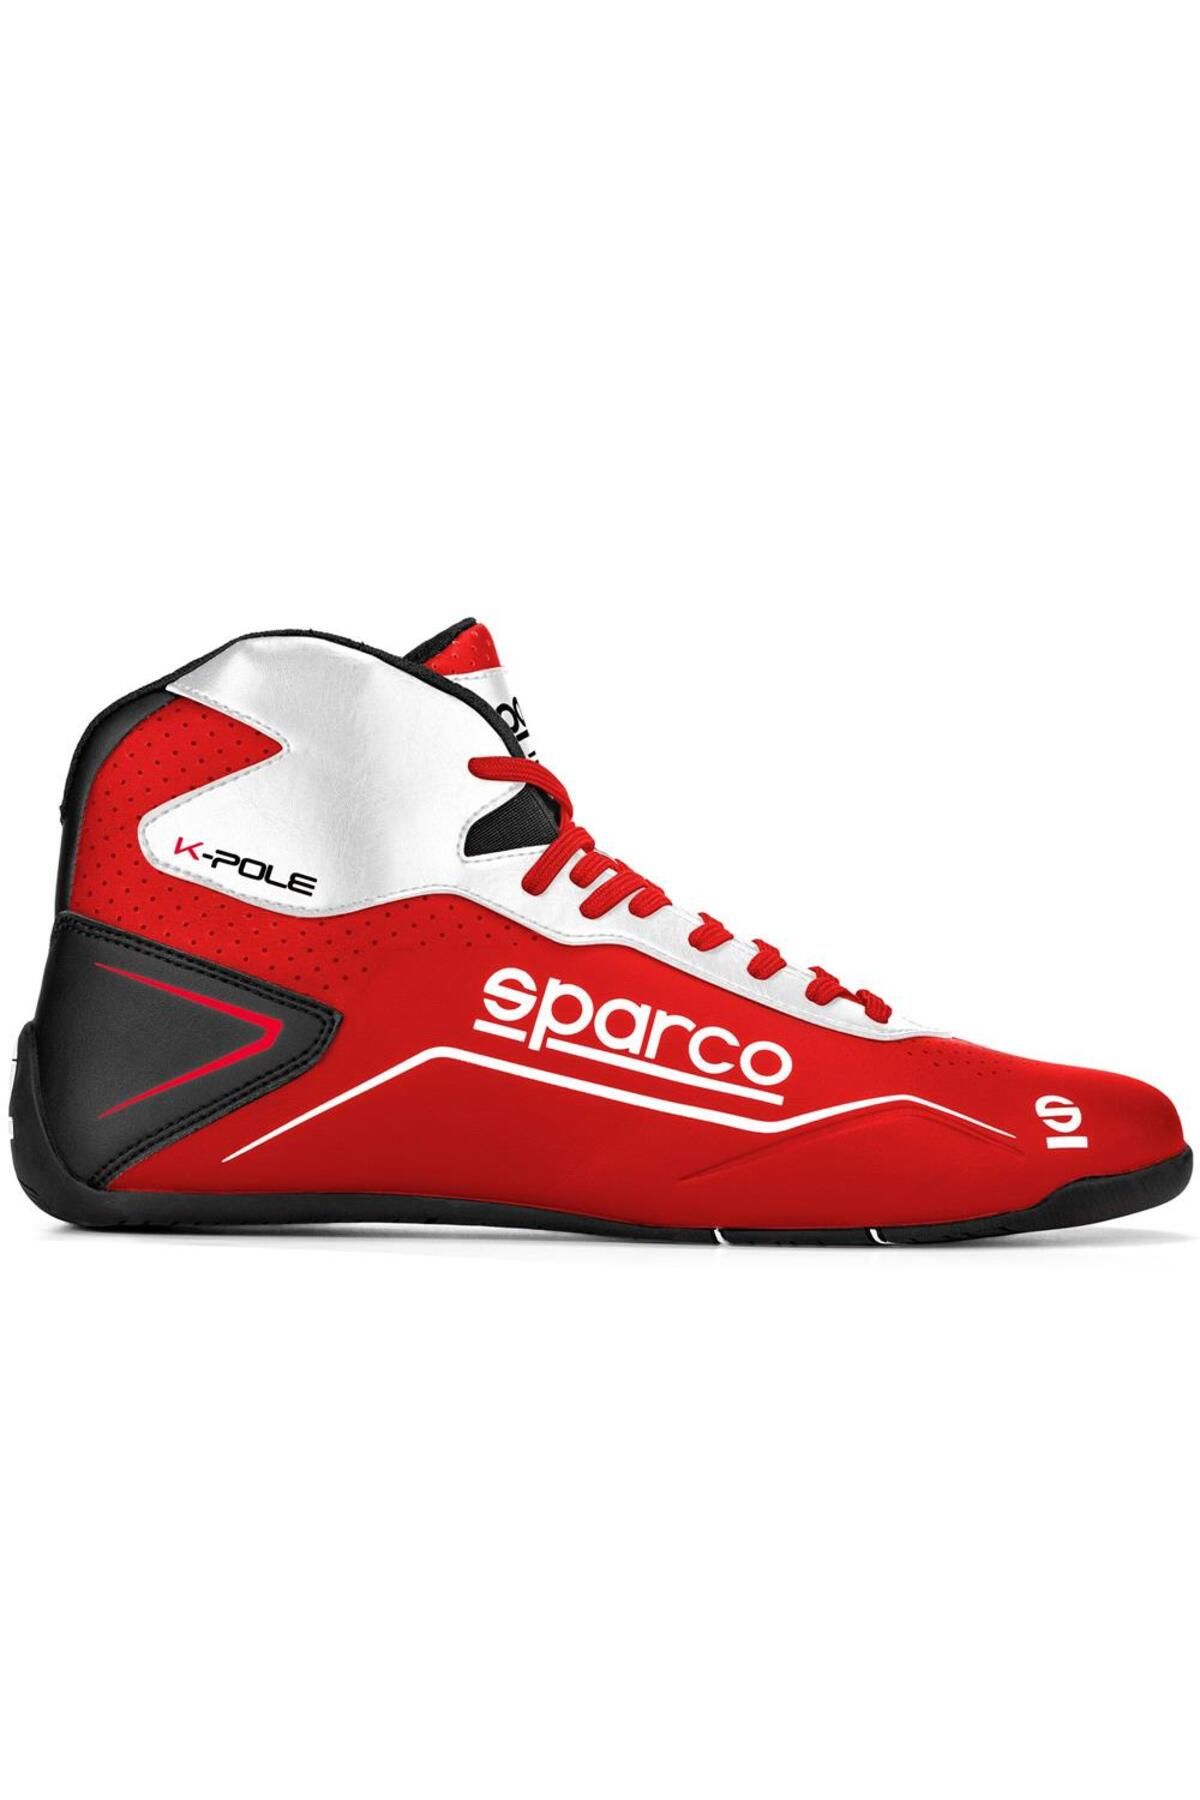 Sparco K-pole Karting Ayakkabısı Kırmızı Beyaz 46 Numara